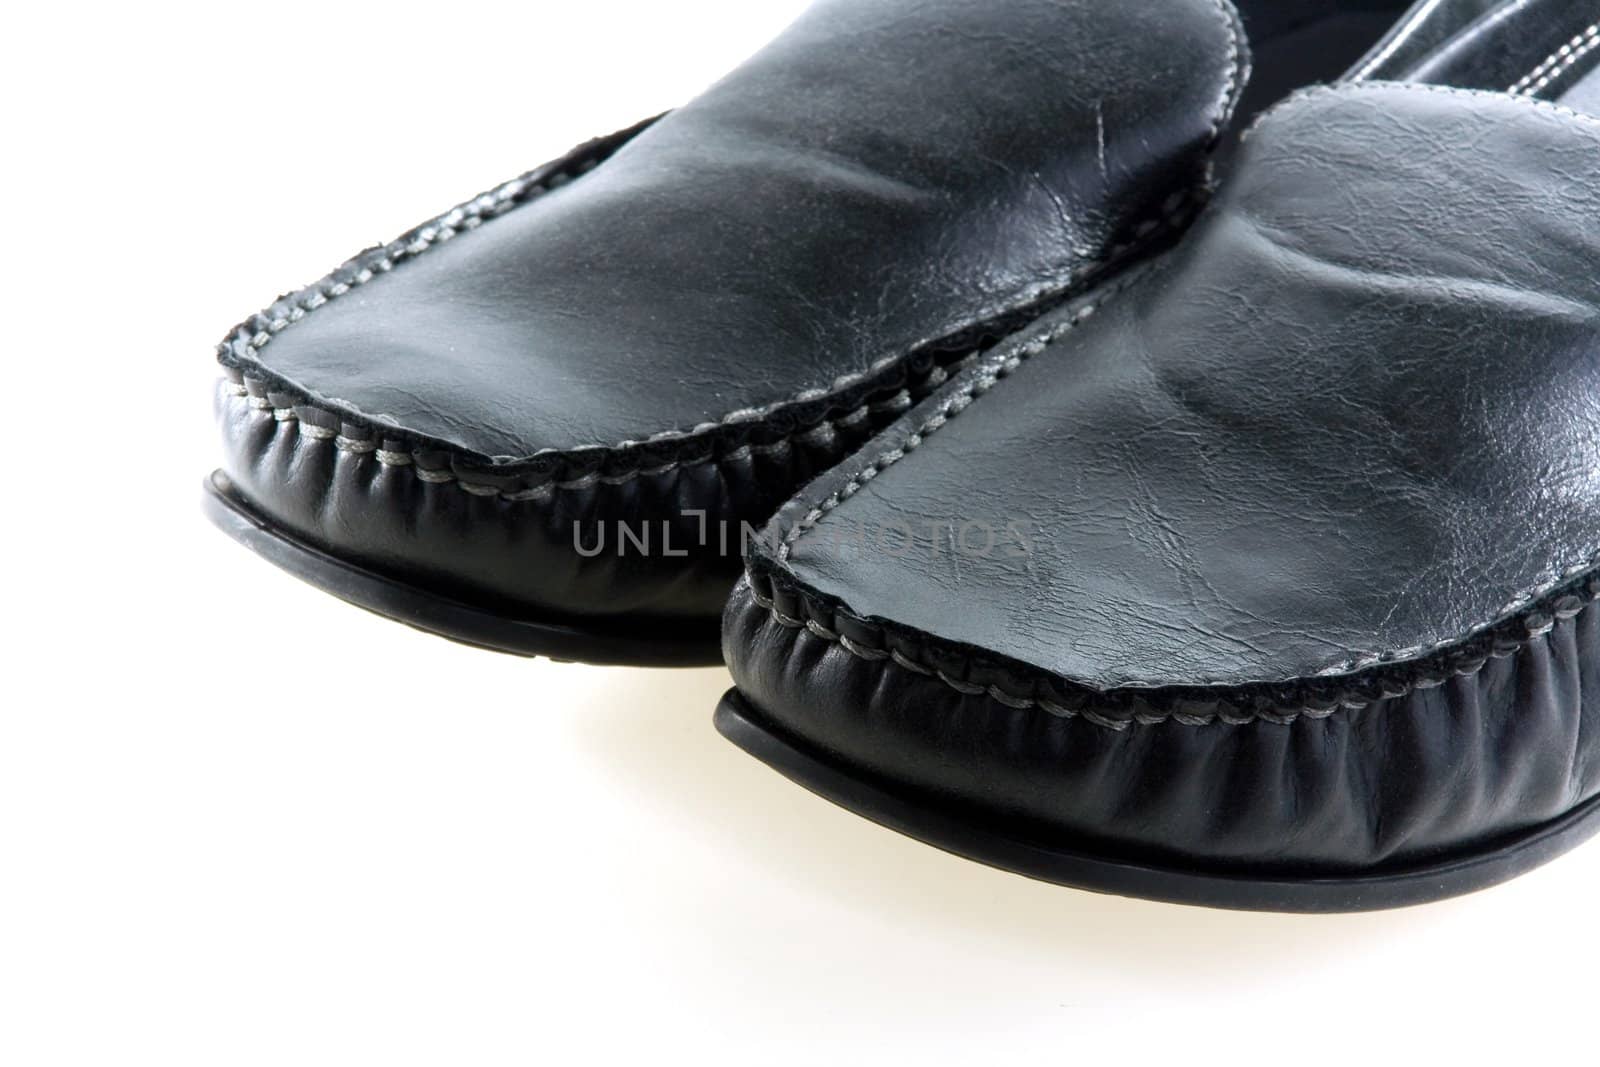 Black elegant fashionable male shoes on white background